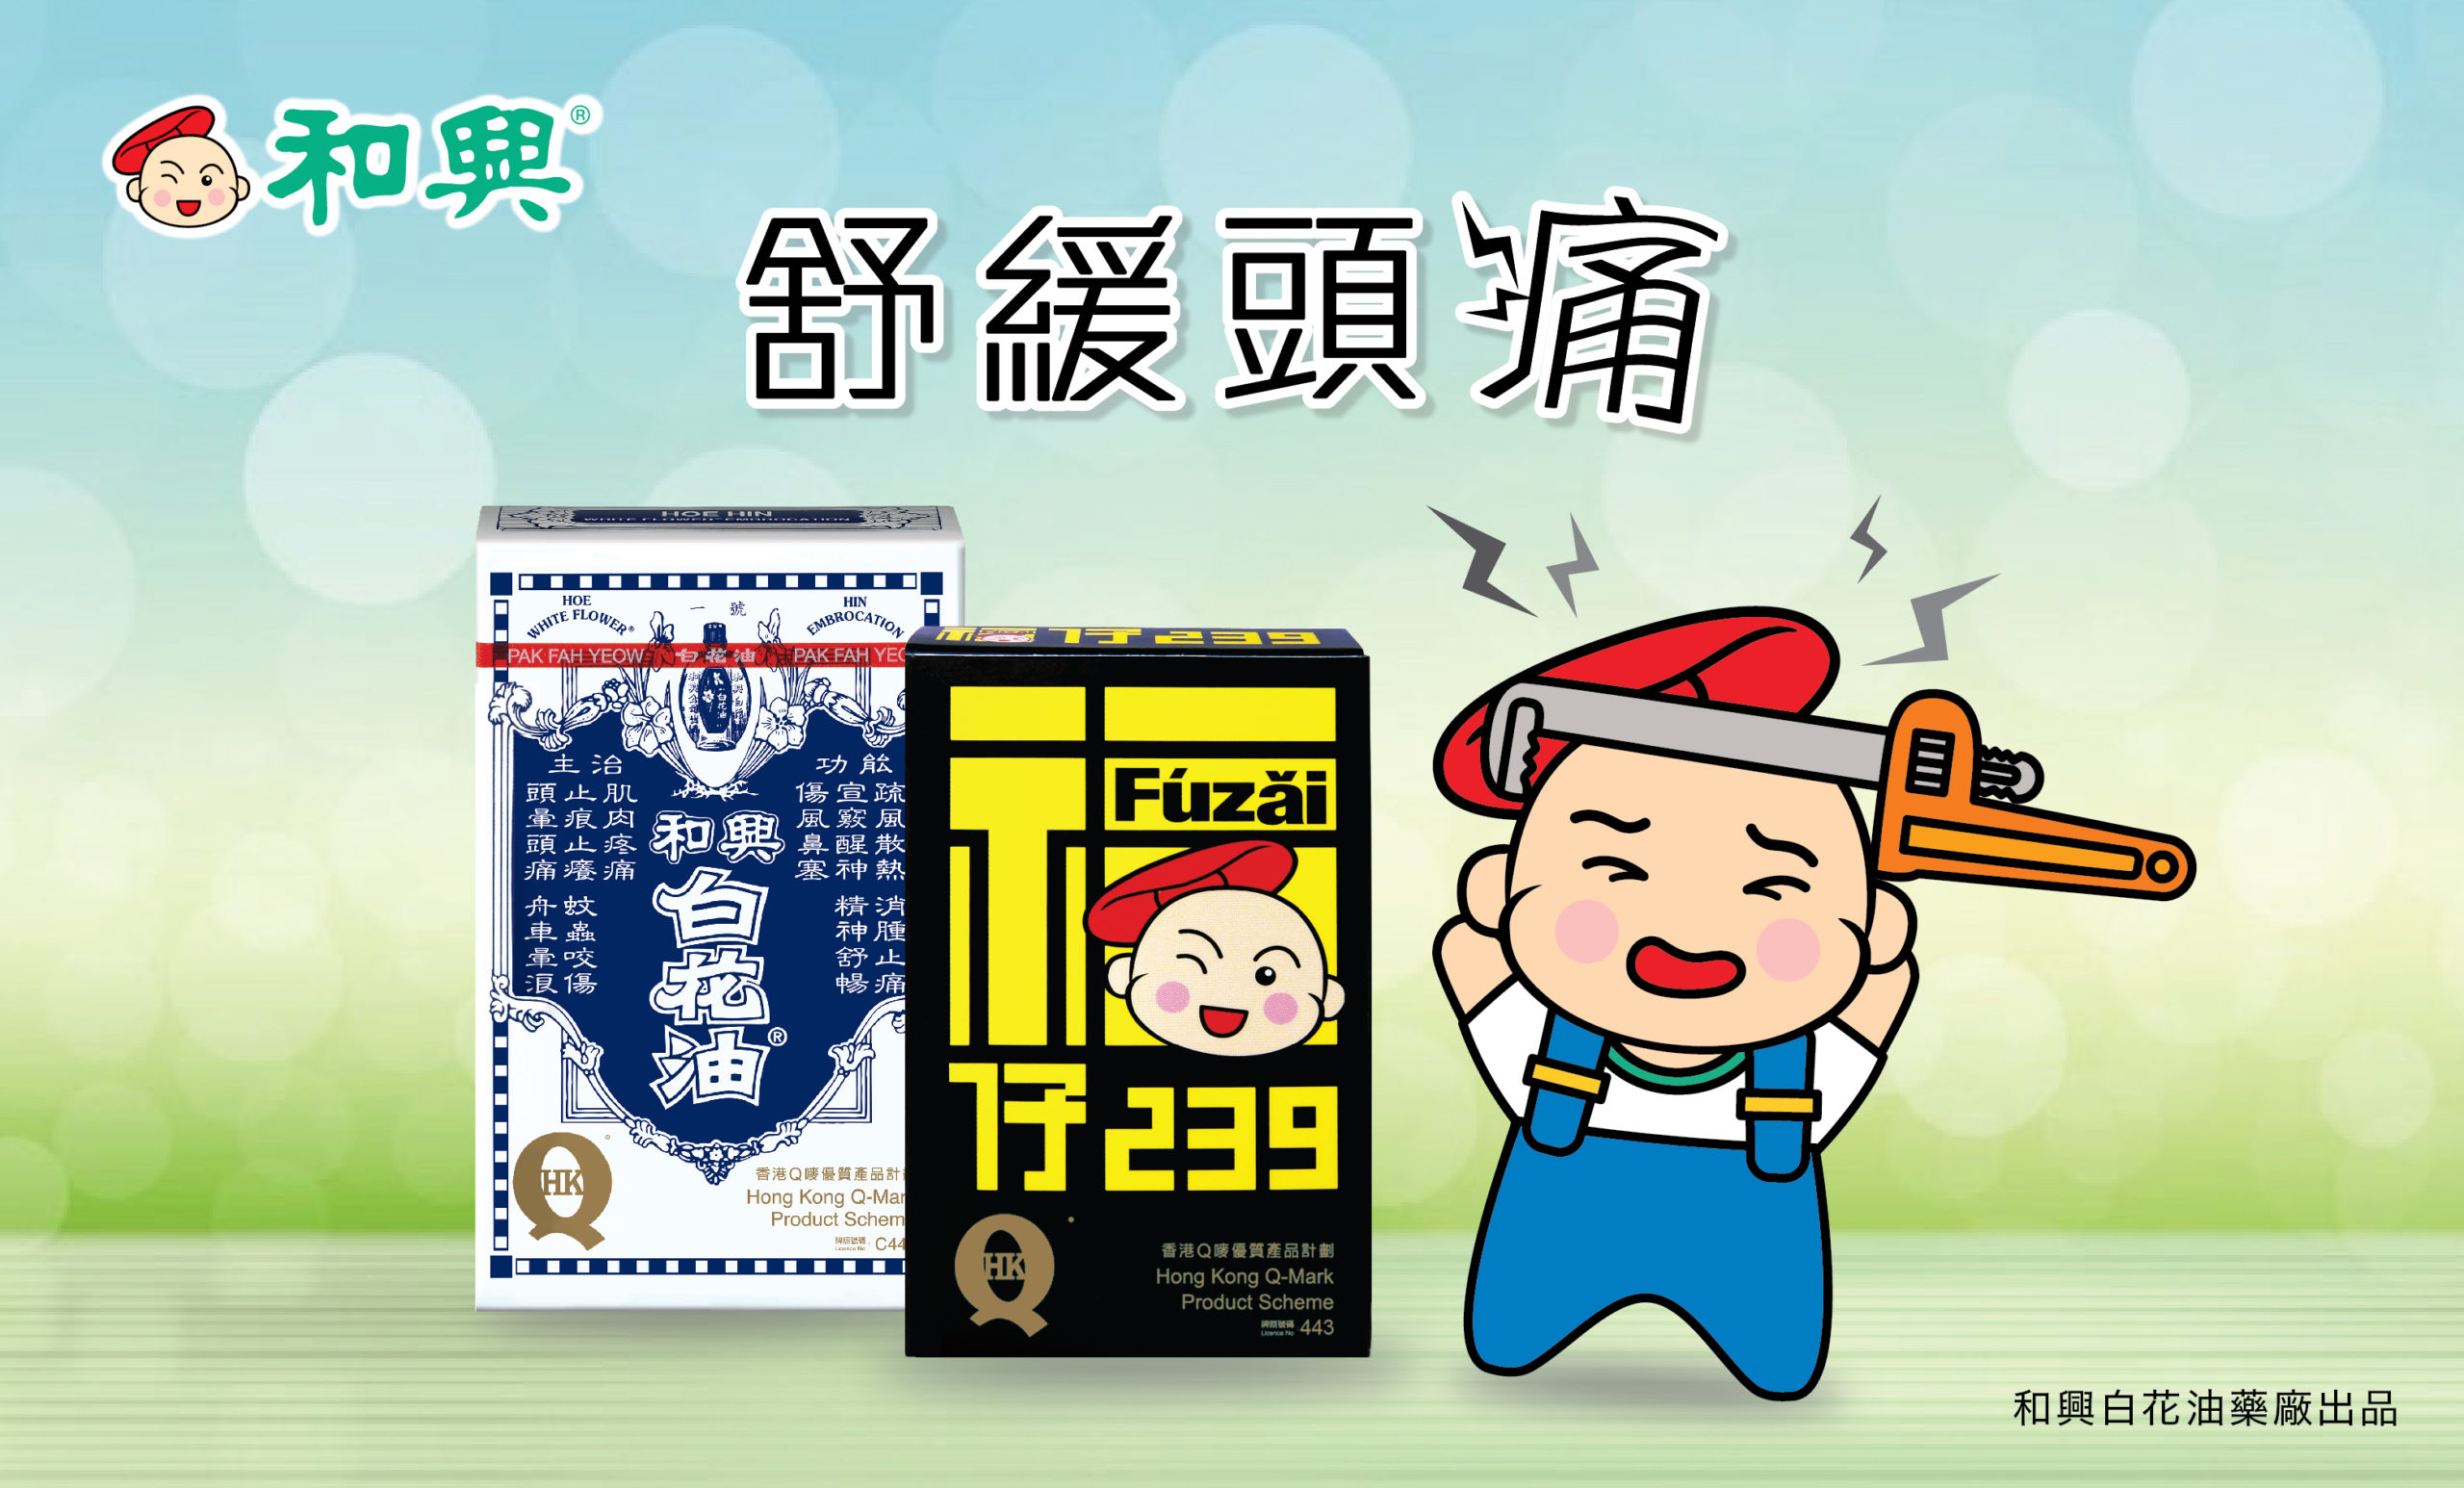 22 香港報章廣告 和興白花油 福仔239 舒緩頭痛篇 和興白花油